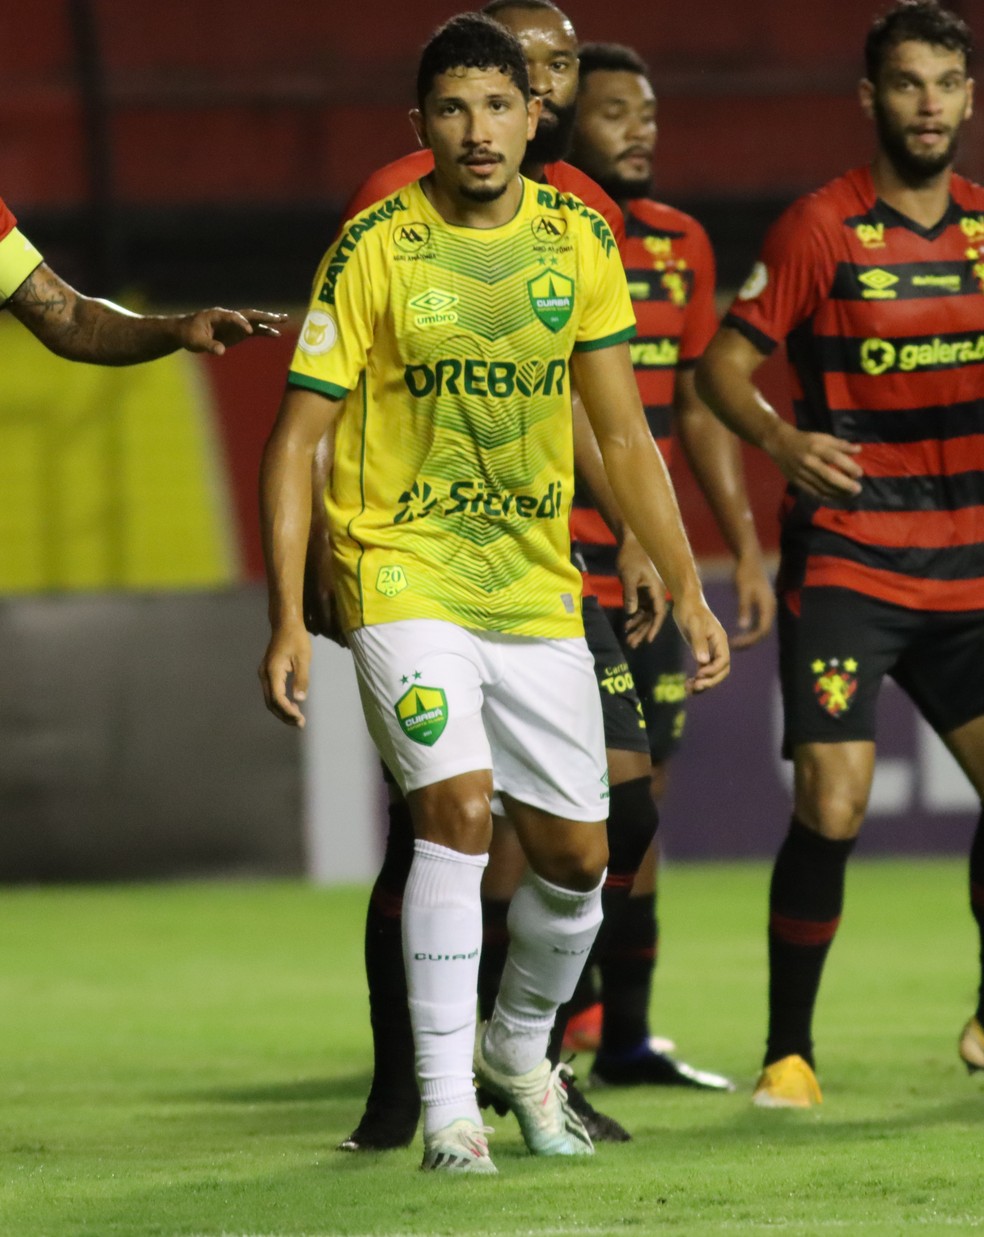 Fluminense tem 14 jogadores emprestados no Brasil e no Exterior - Super  Rádio Tupi